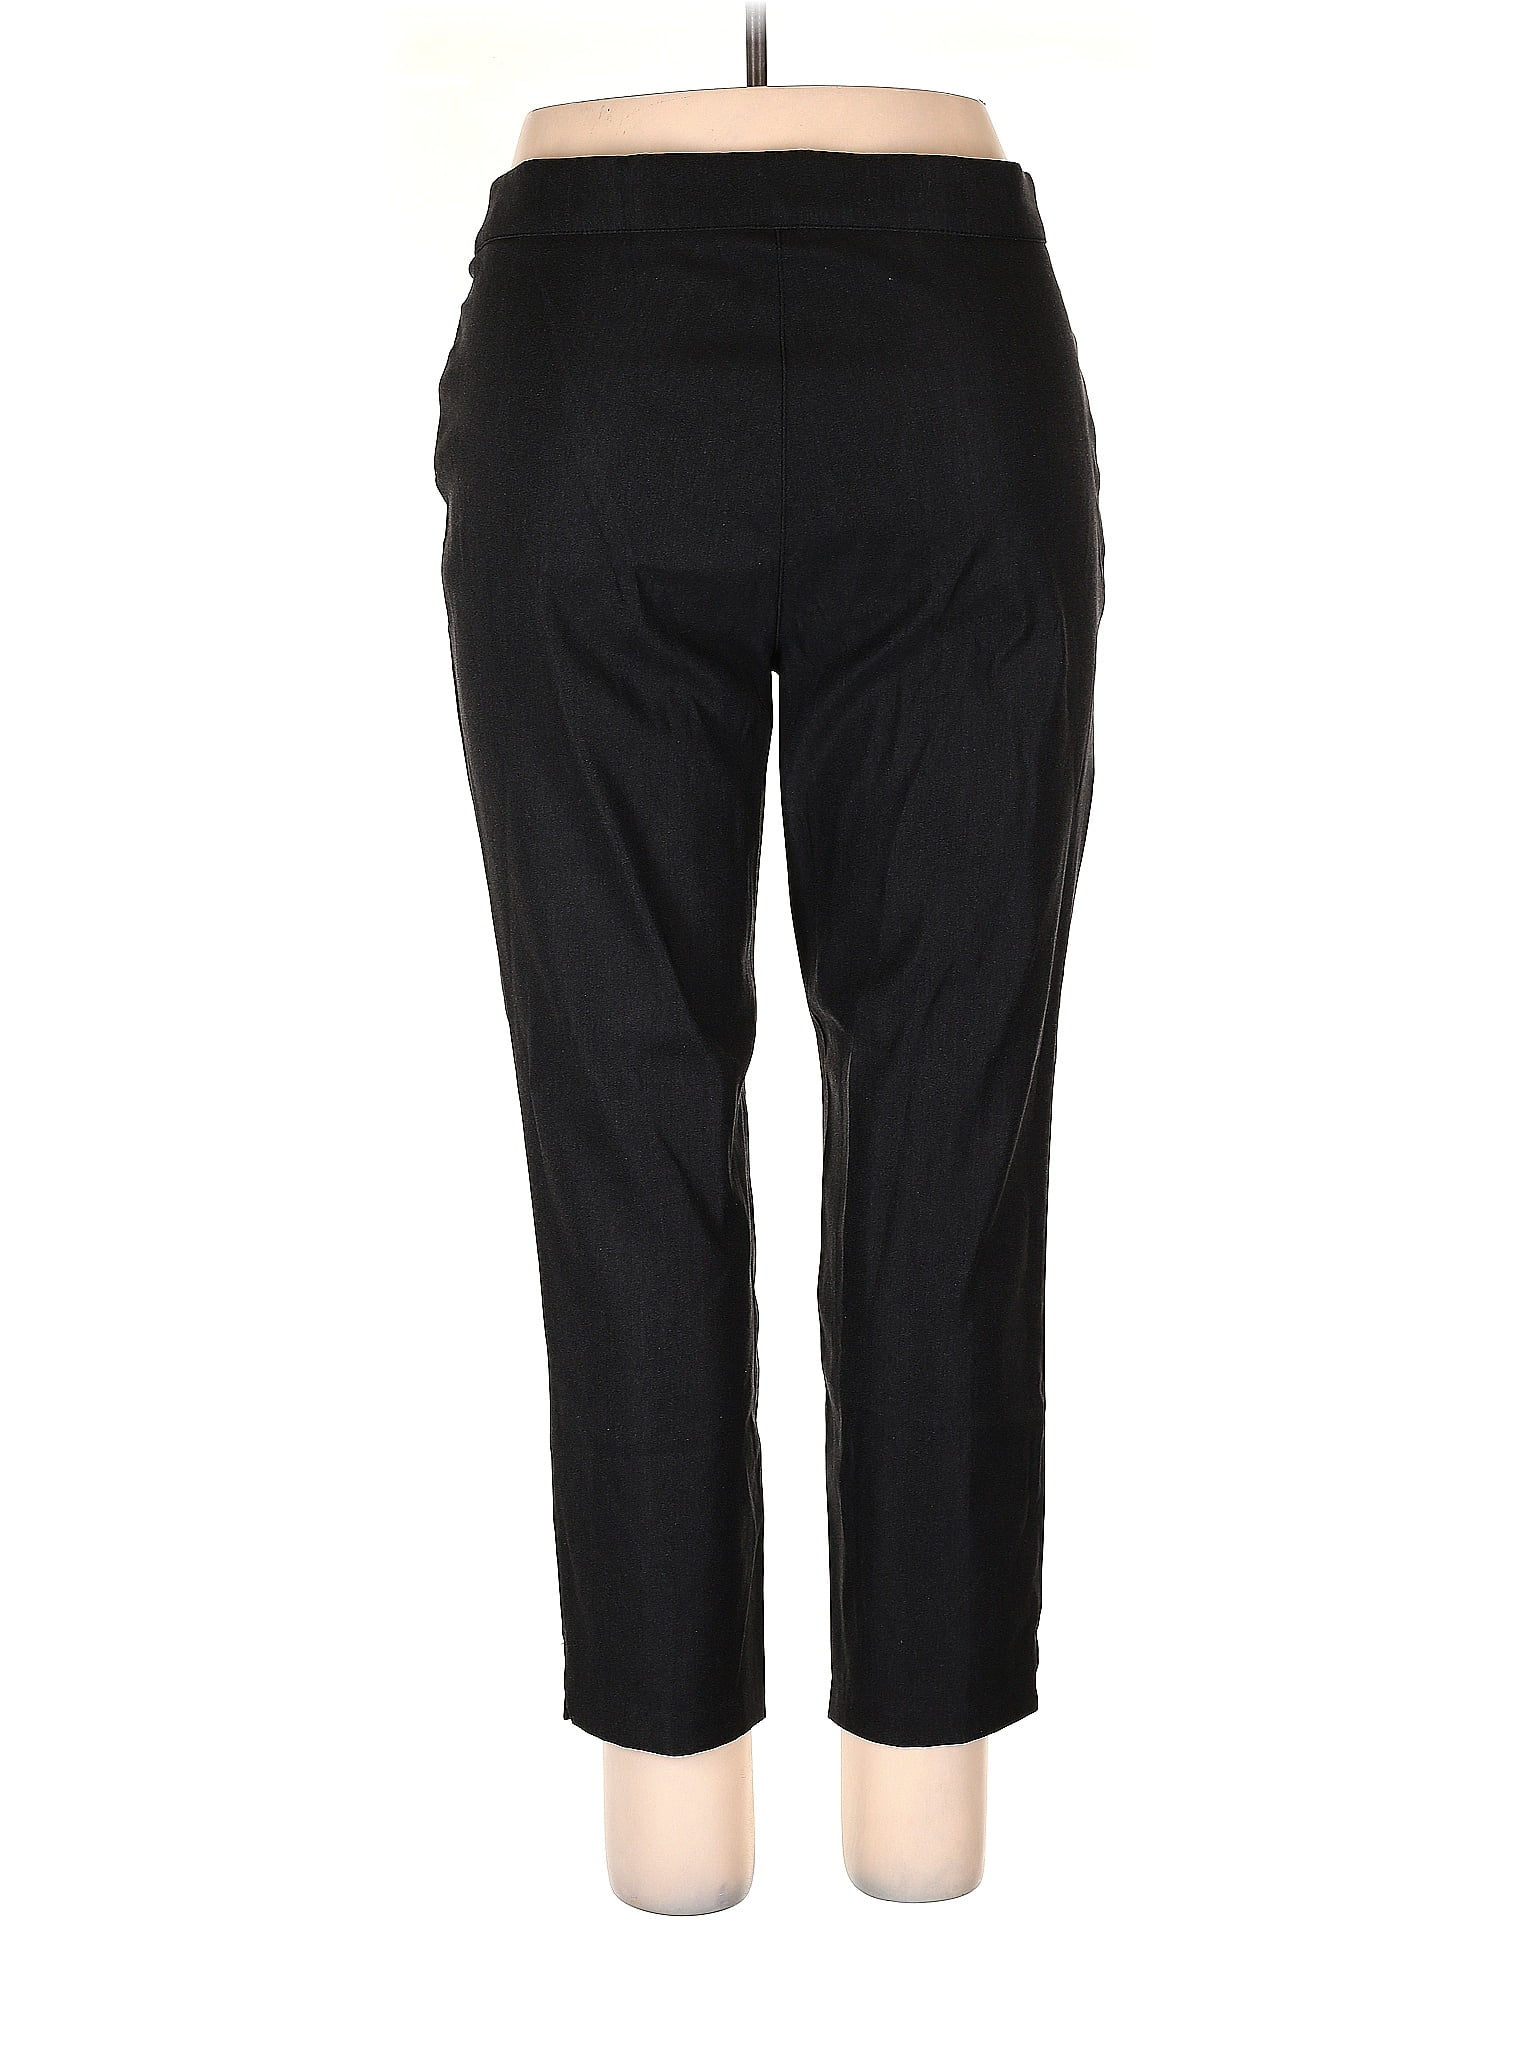 GAIAM Black Active Pants Size XL - 47% off